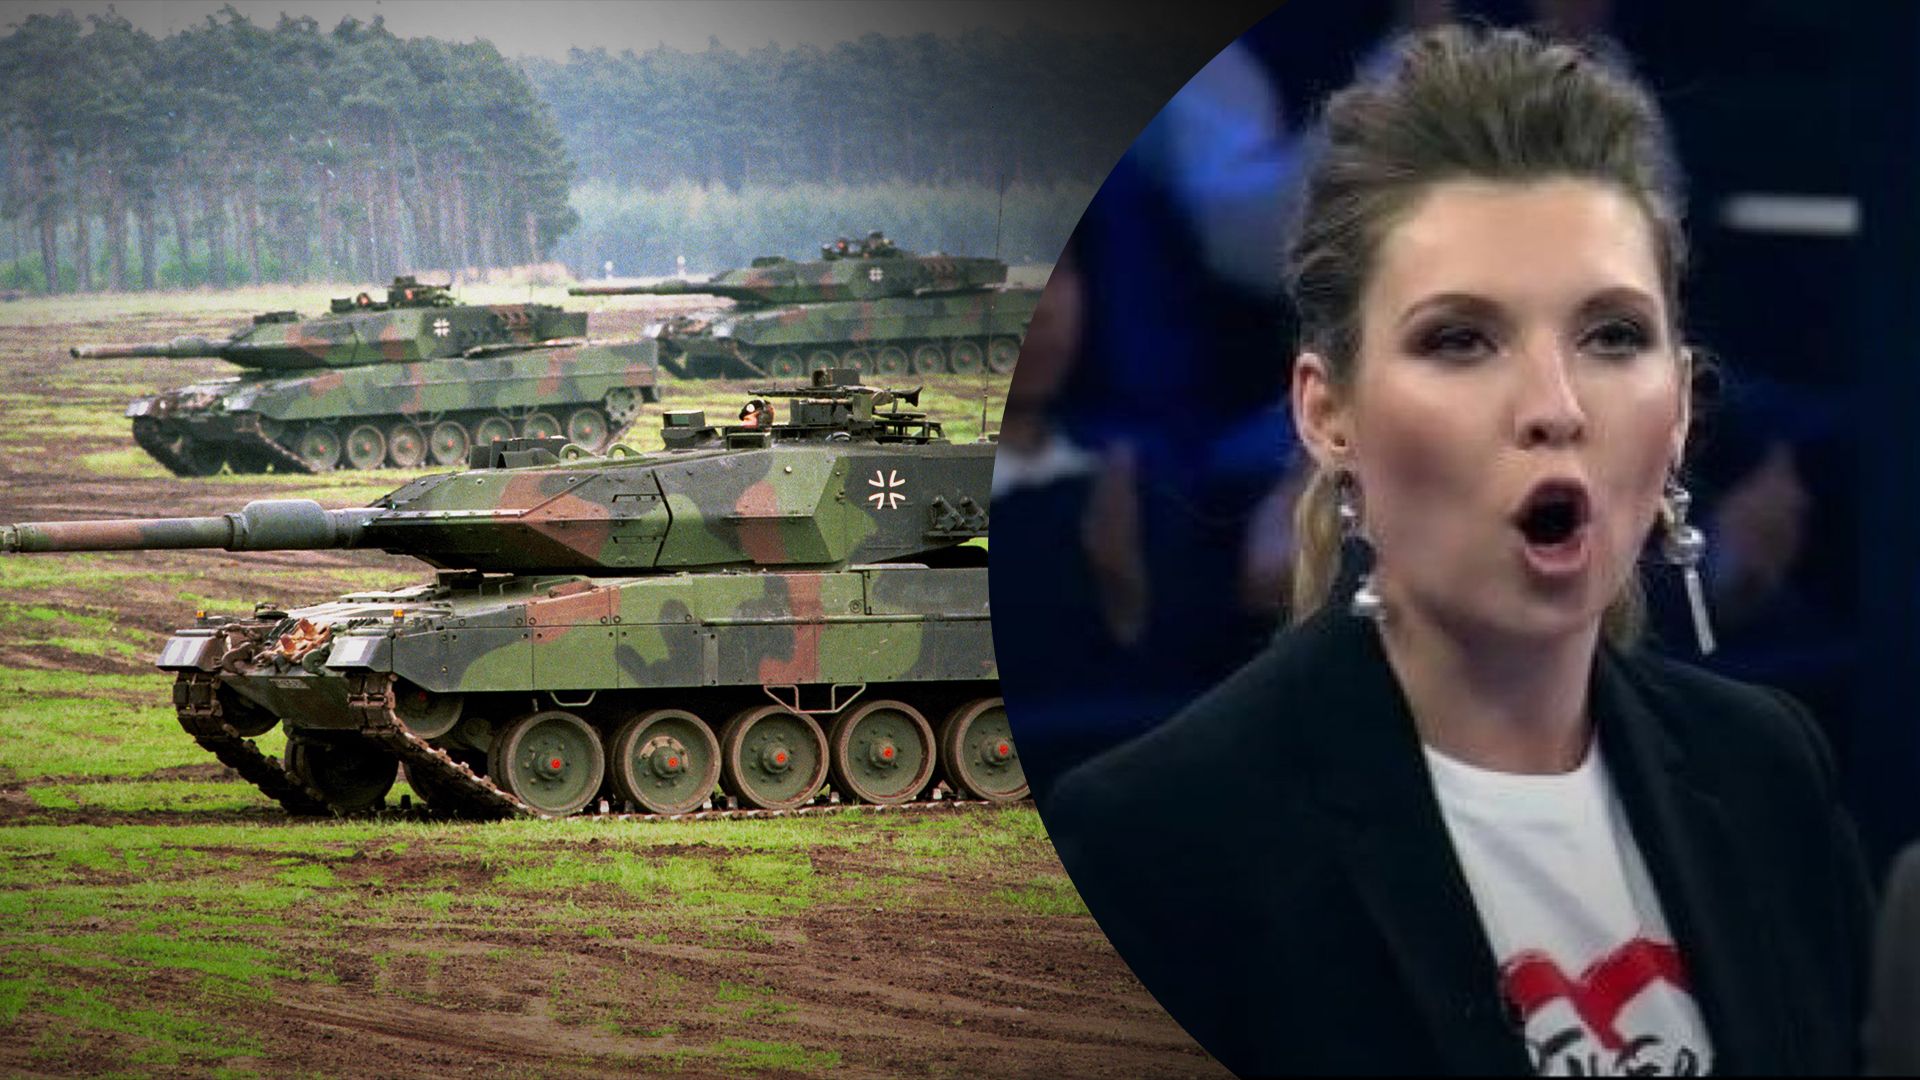 Танки Leopard 2 якобы уже в Украине – опровержение фейка пропагандистов